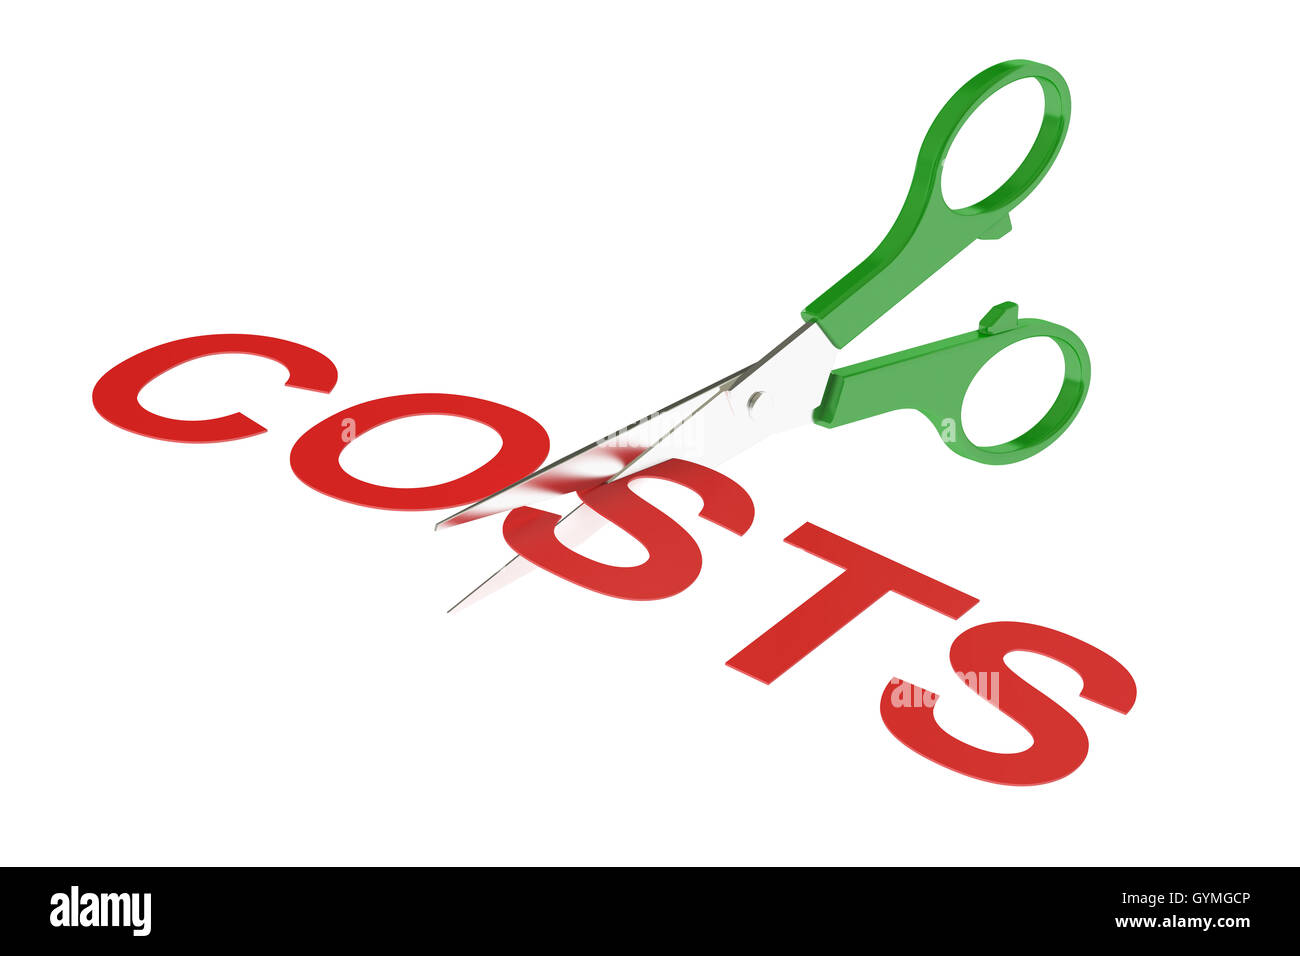 Concetto di costi, il taglio dei costi. 3D rendering isolati su sfondo bianco Foto Stock